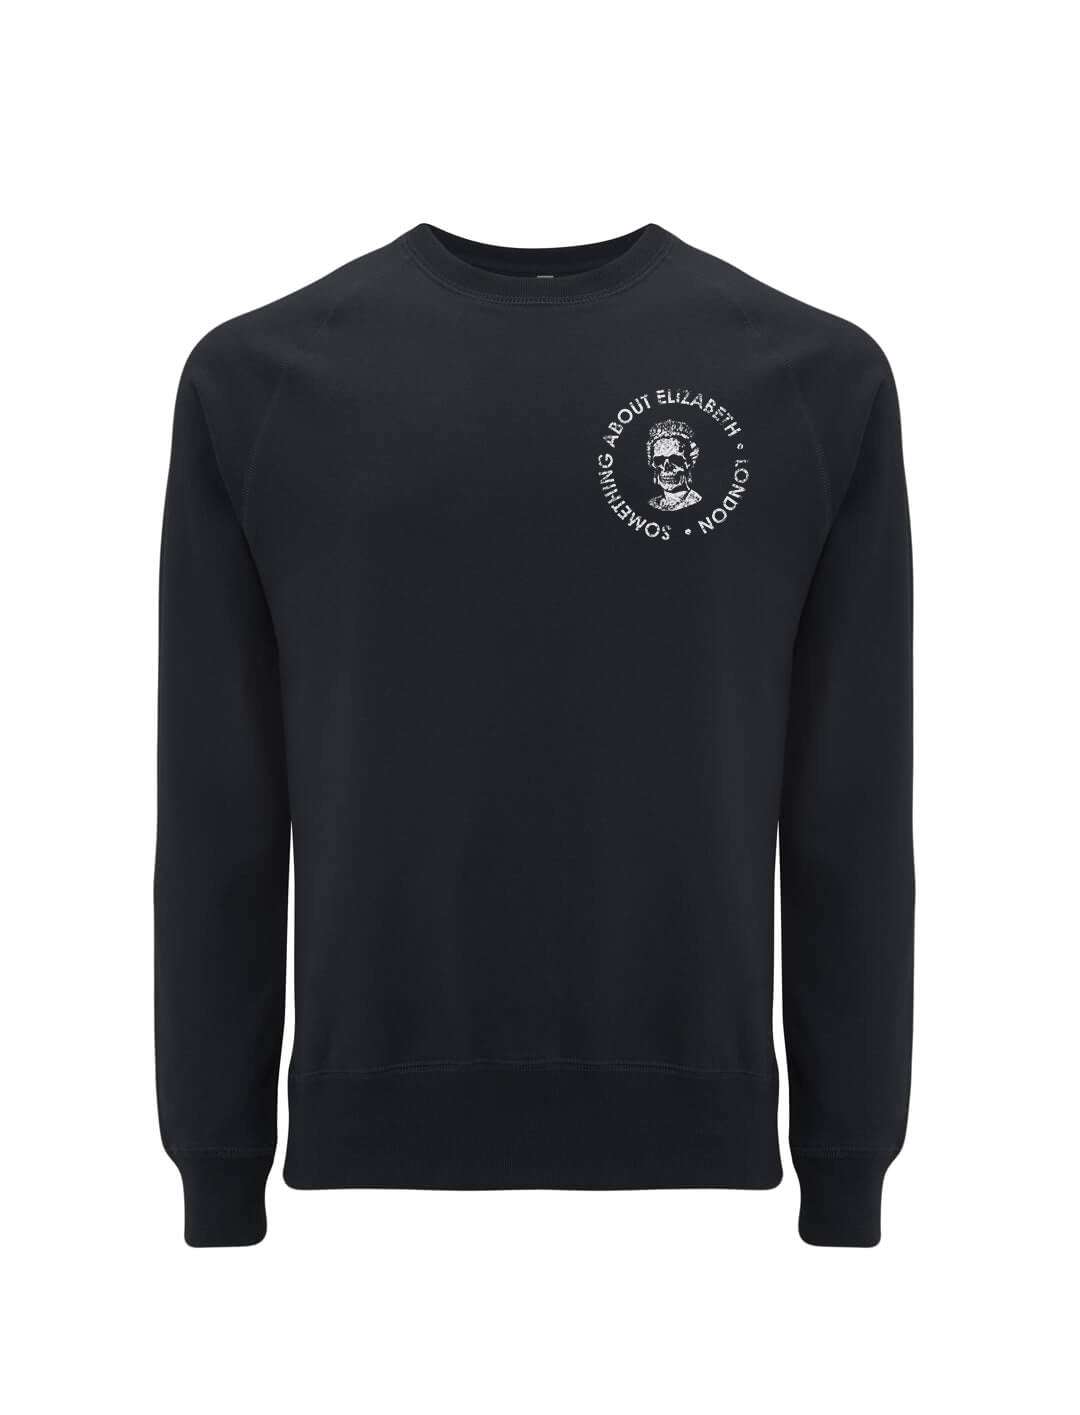 The SAE Logo -Black Sweatshirt – Something About Elizabeth